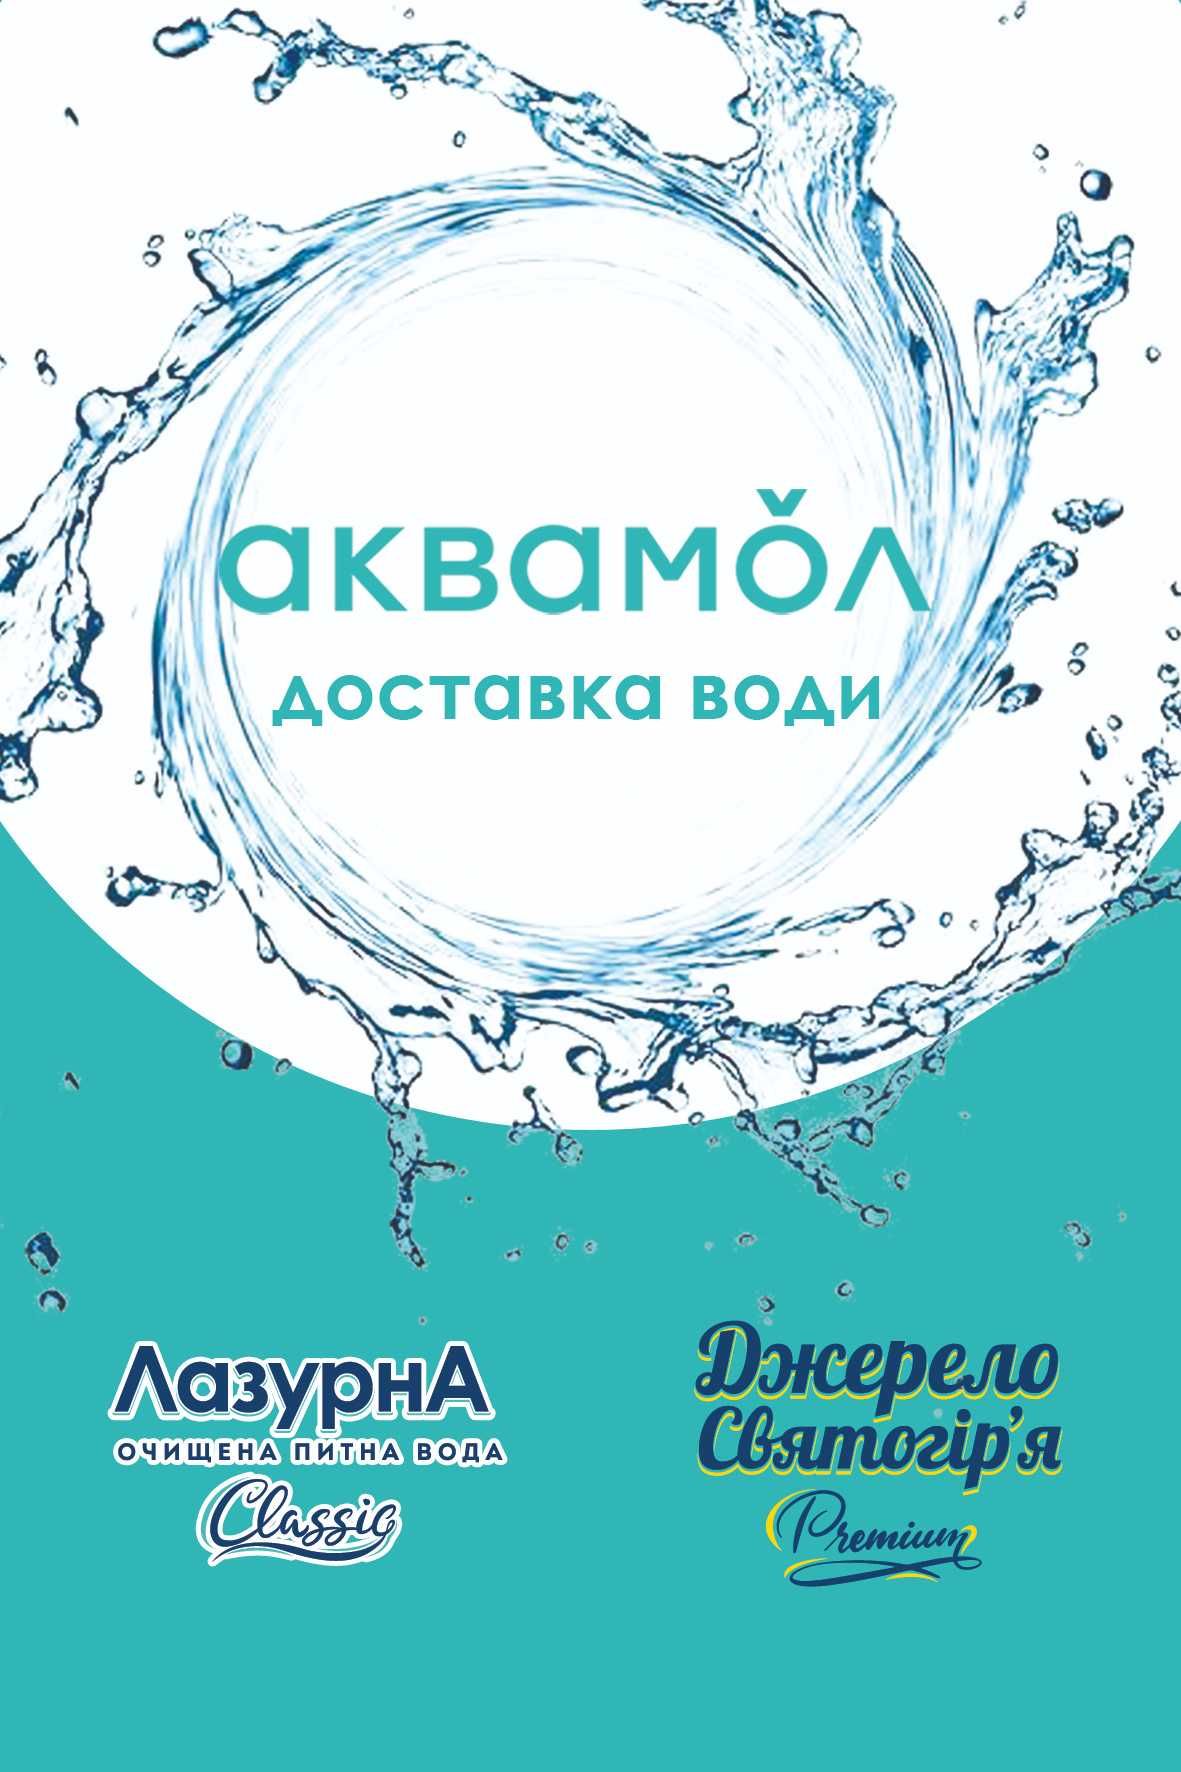 Замовити воду Харків, безплатна доставка питної води Аквамол